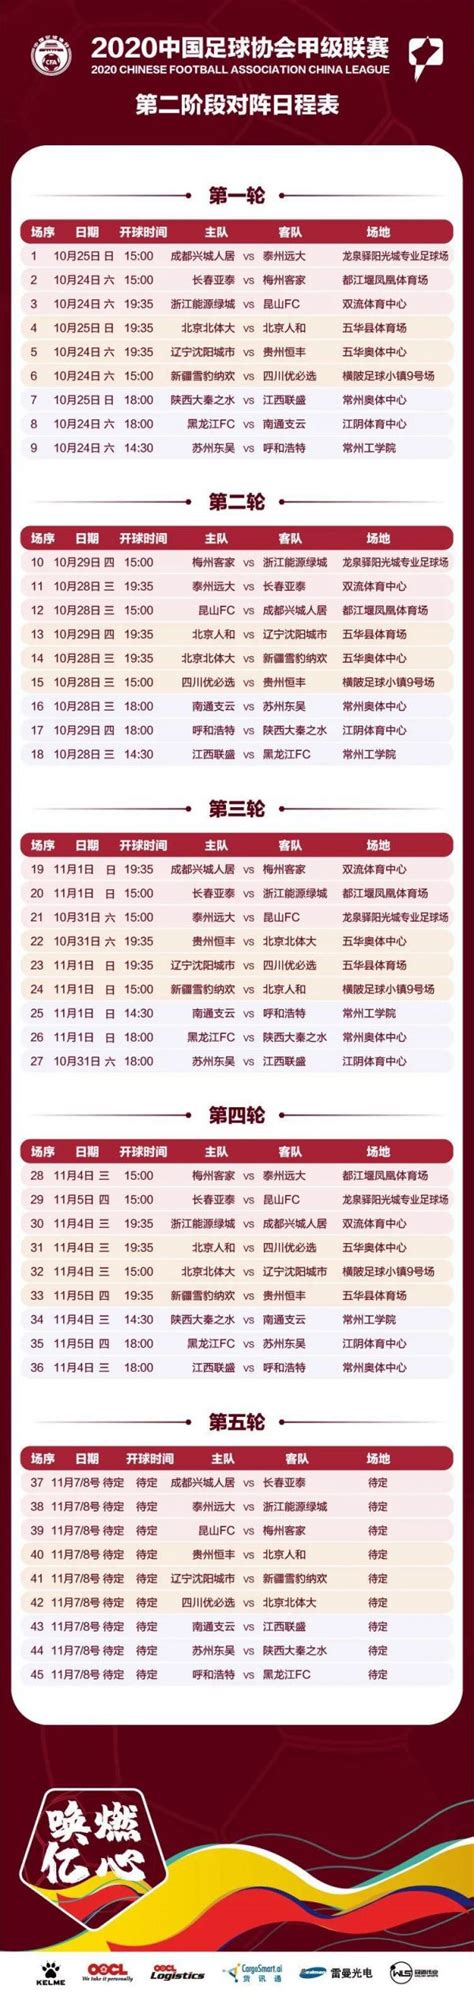 中甲联赛2020赛程表一览- 广州本地宝